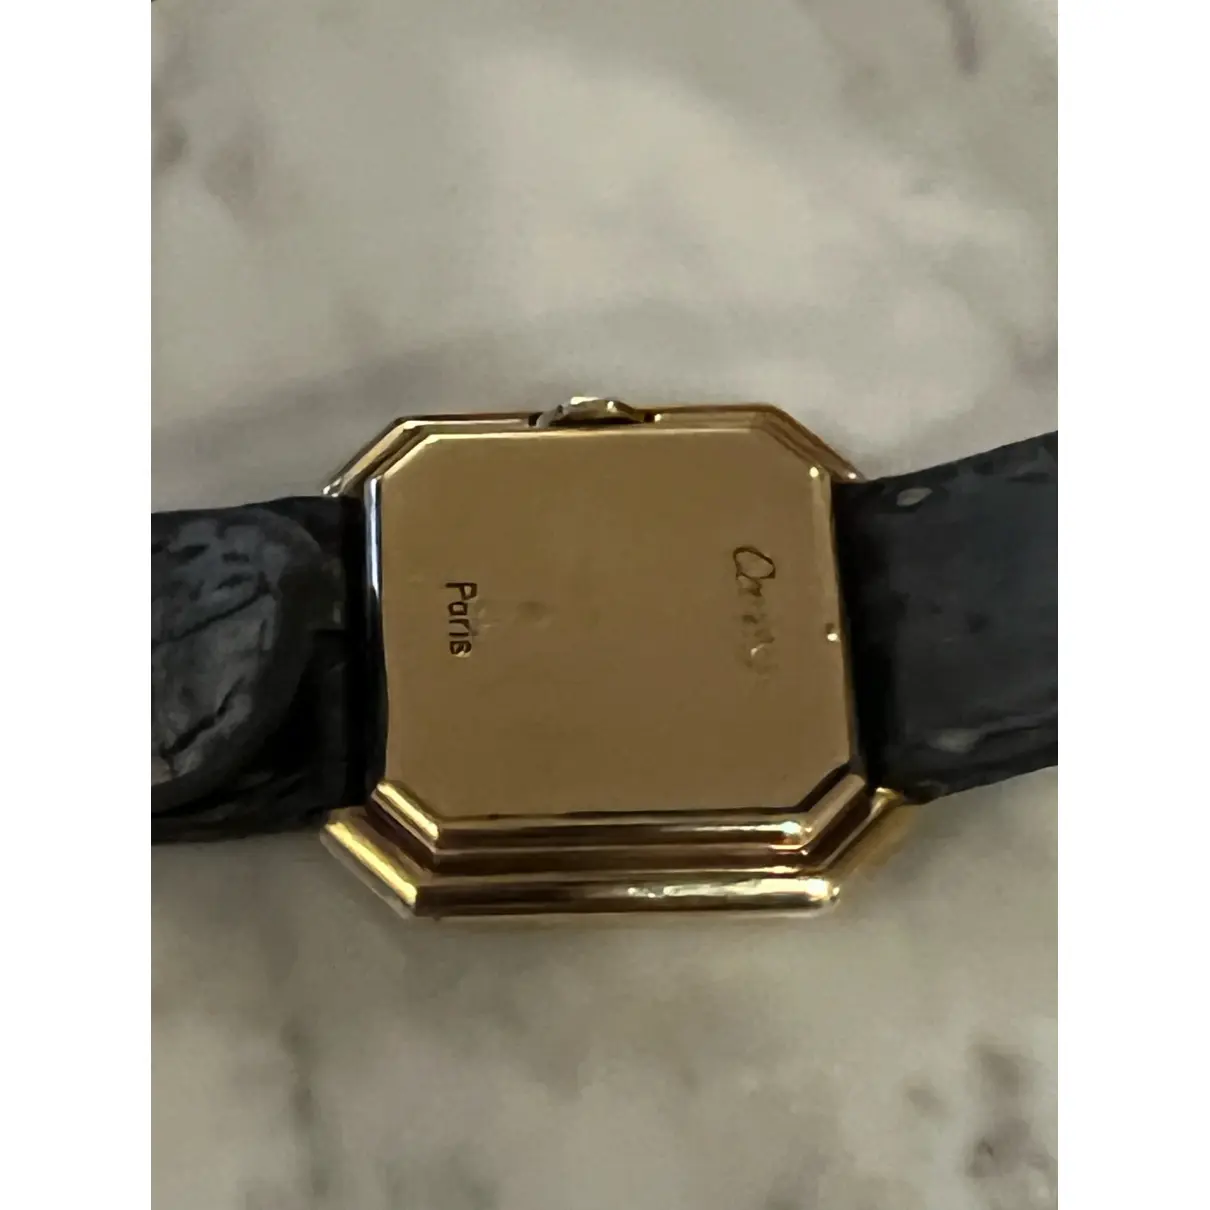 Buy Cartier Ceinture yellow gold watch online - Vintage